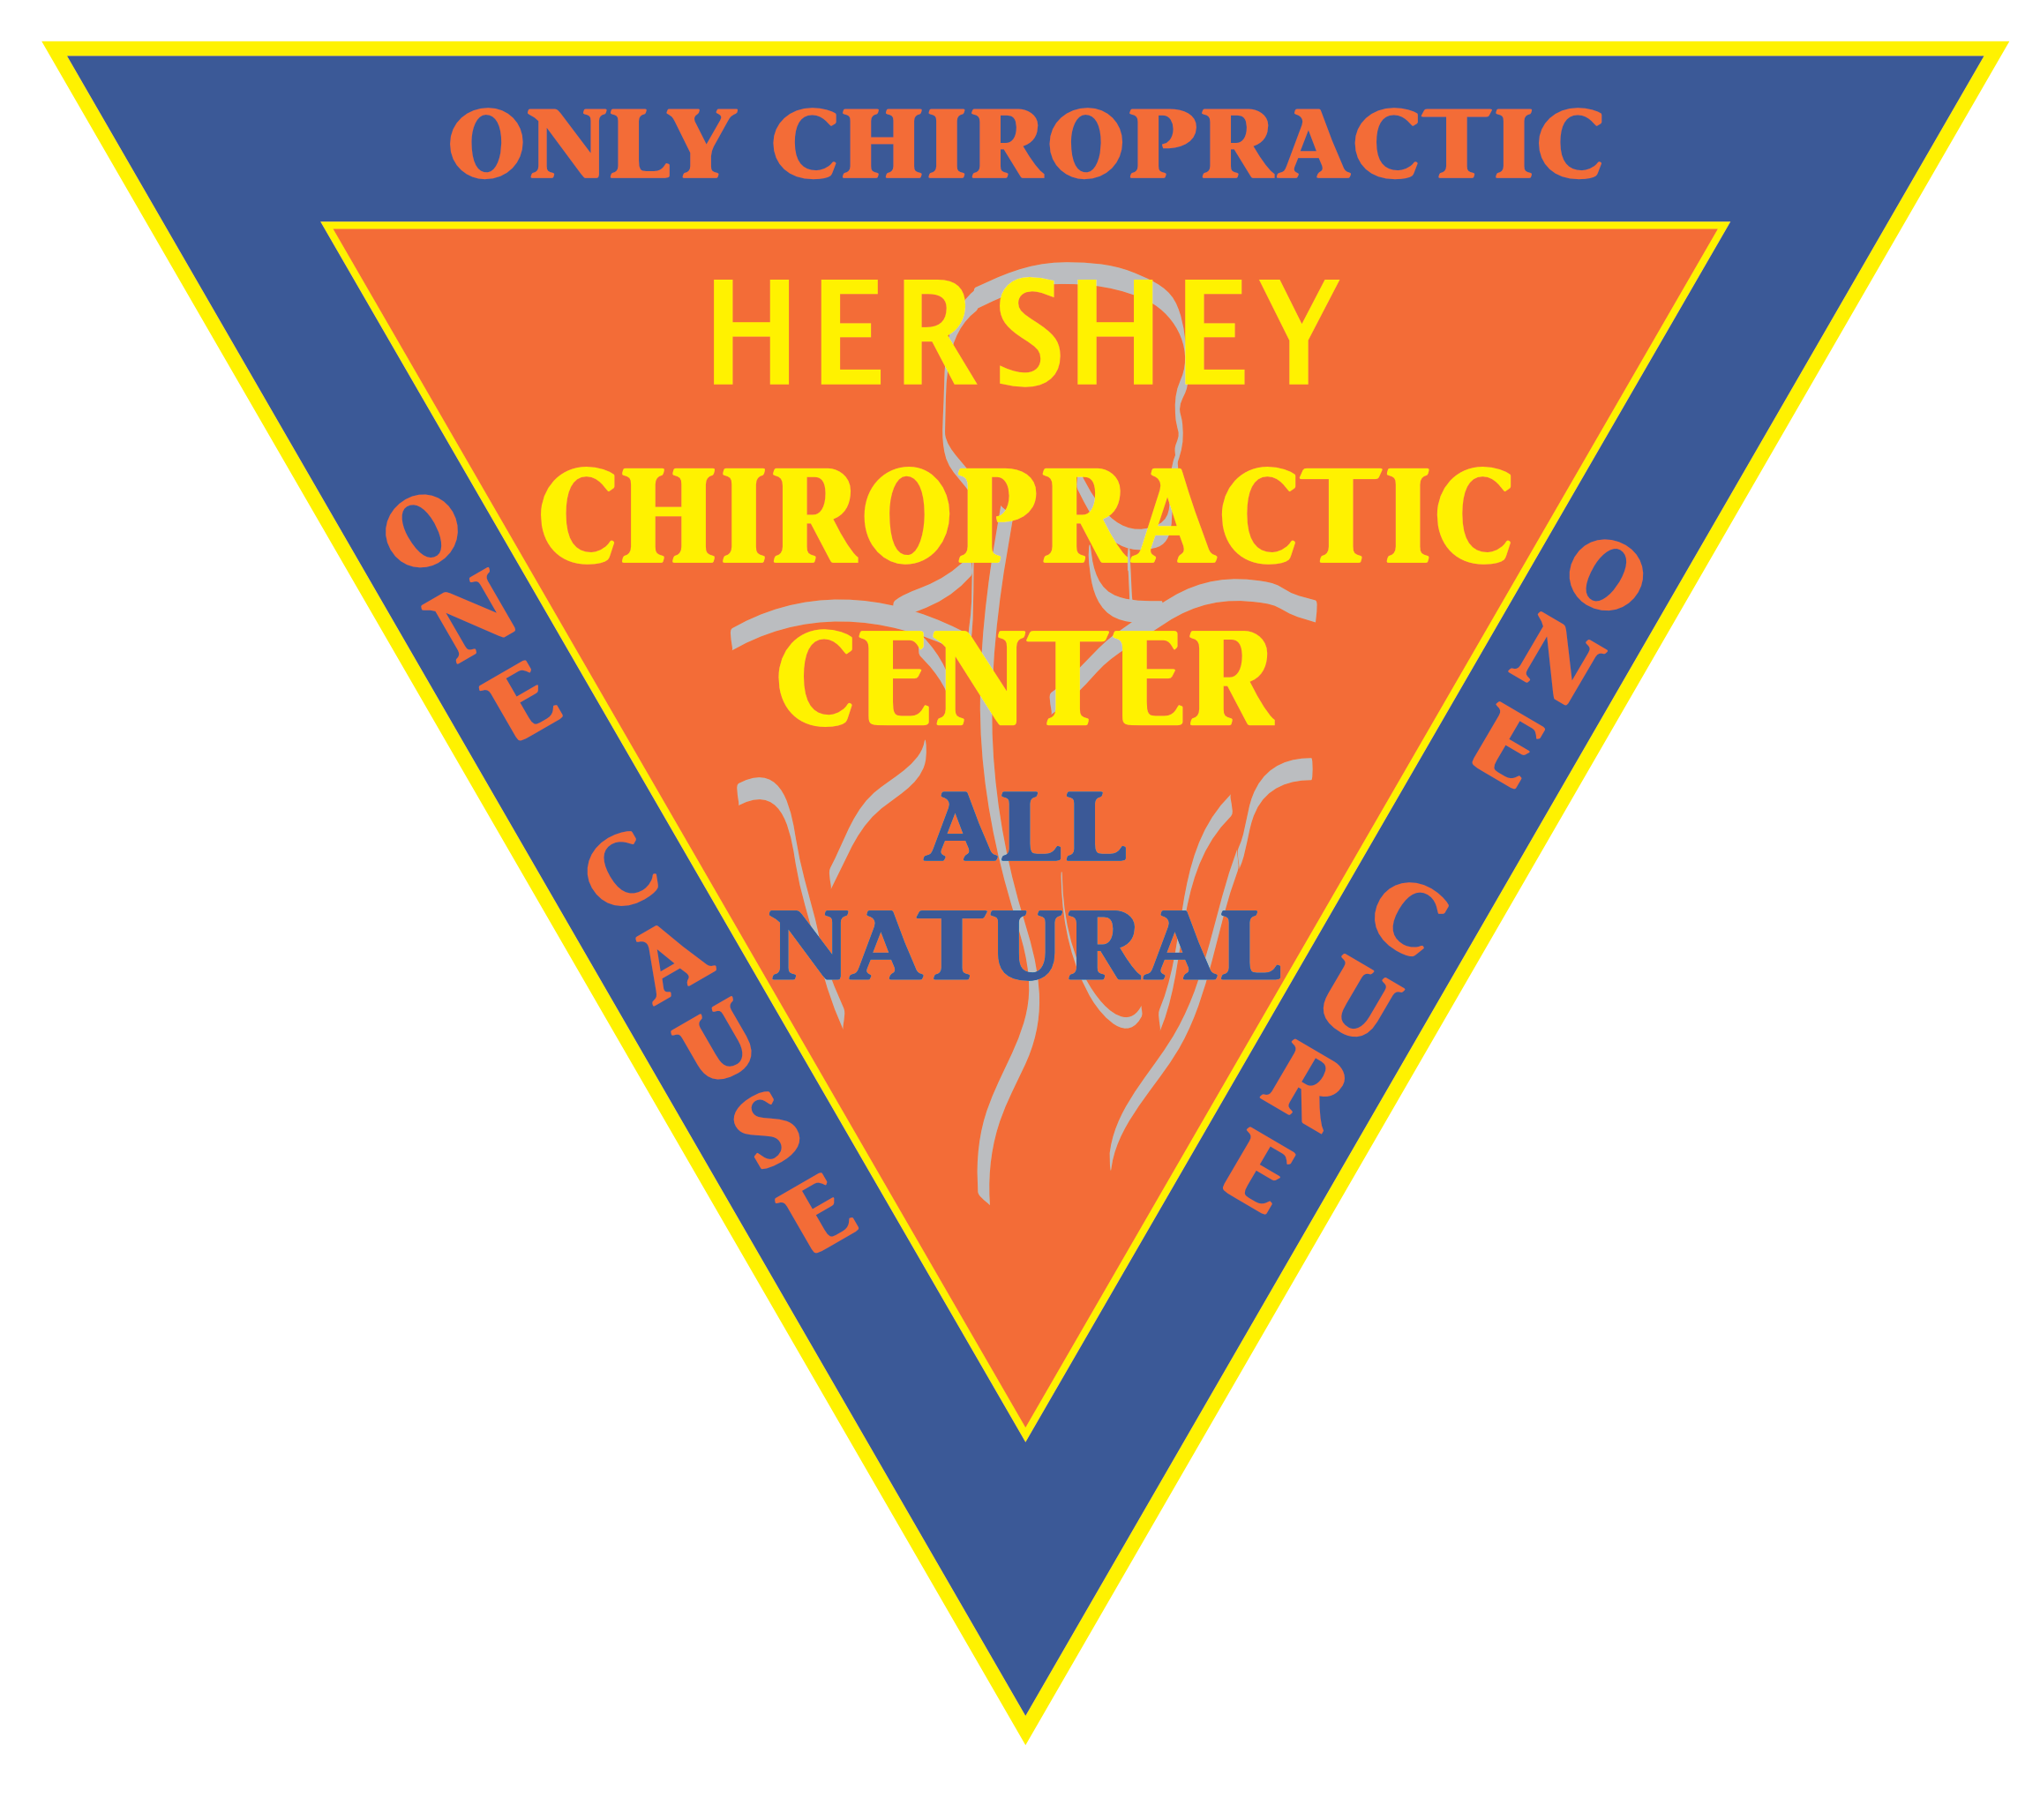 Hershey Chiropractic Center